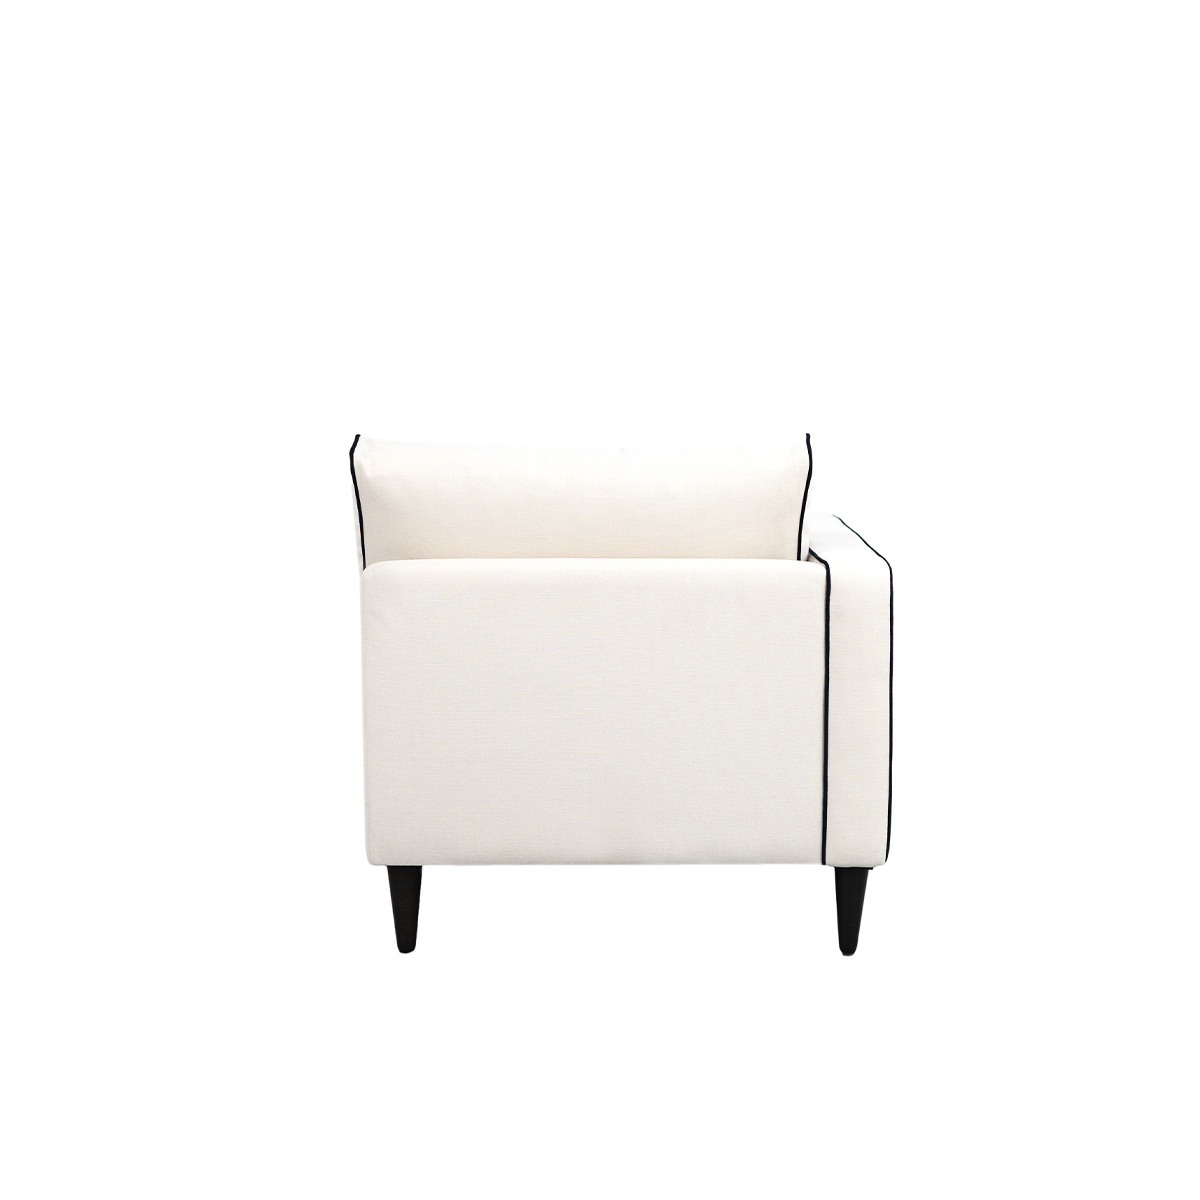 Noa sofa - Left armrest, L150 x P80 x H75 cm - Cotton - image 6